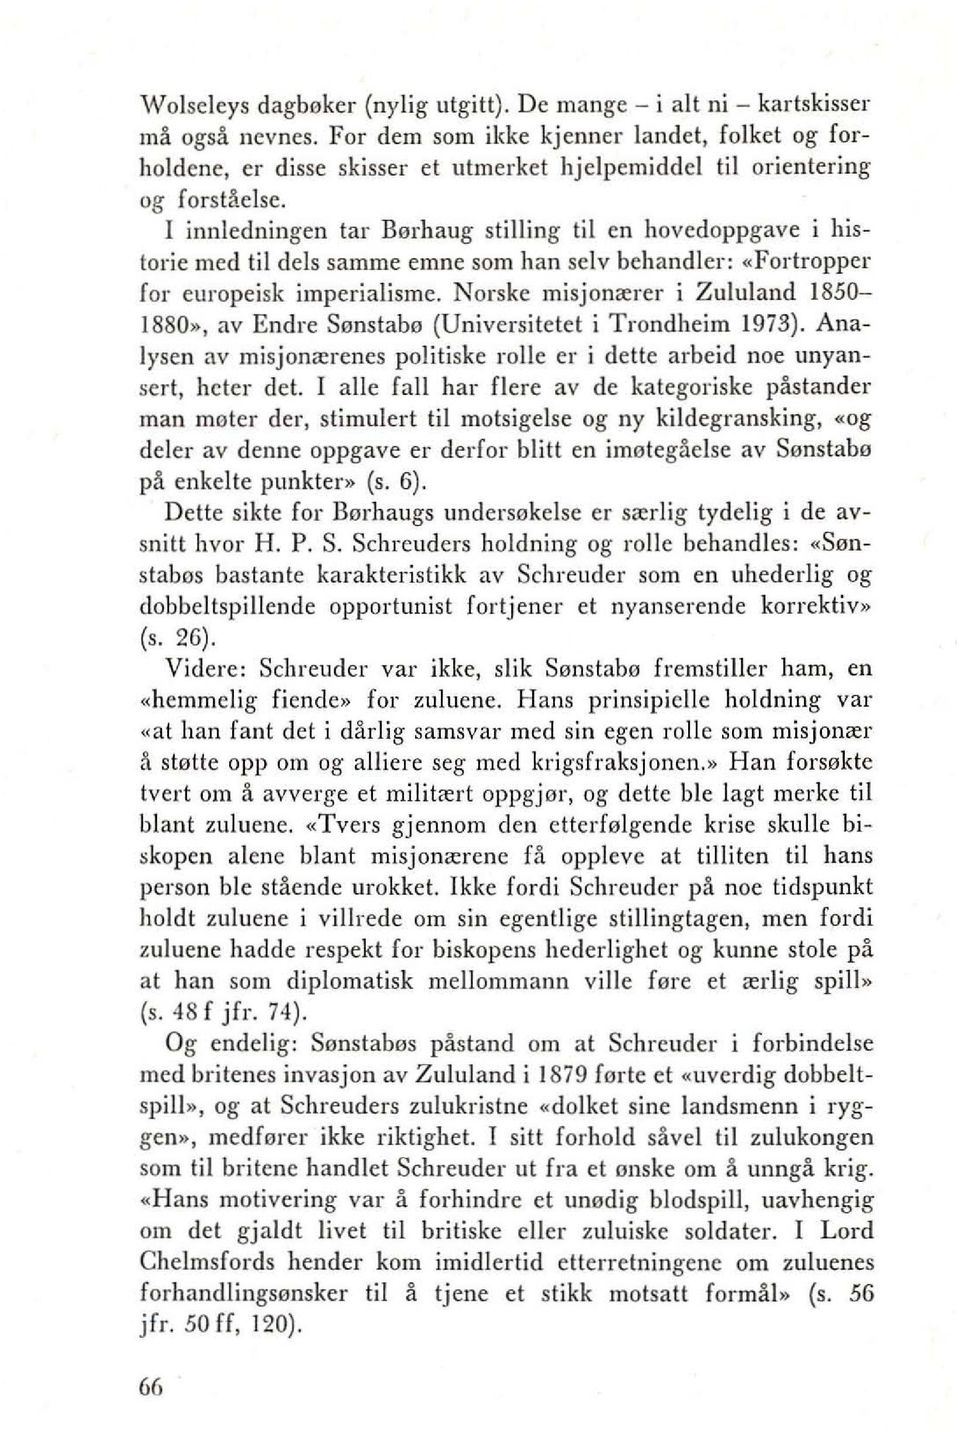 I innledningen tar Berhaug slilling til en hovedoppgave i historie mcd Iii dels samme emne som han selv behandler: «Forlroppcr for europeisk imperialisme. Norske misjon"'rer i Zululand 1850 1880.